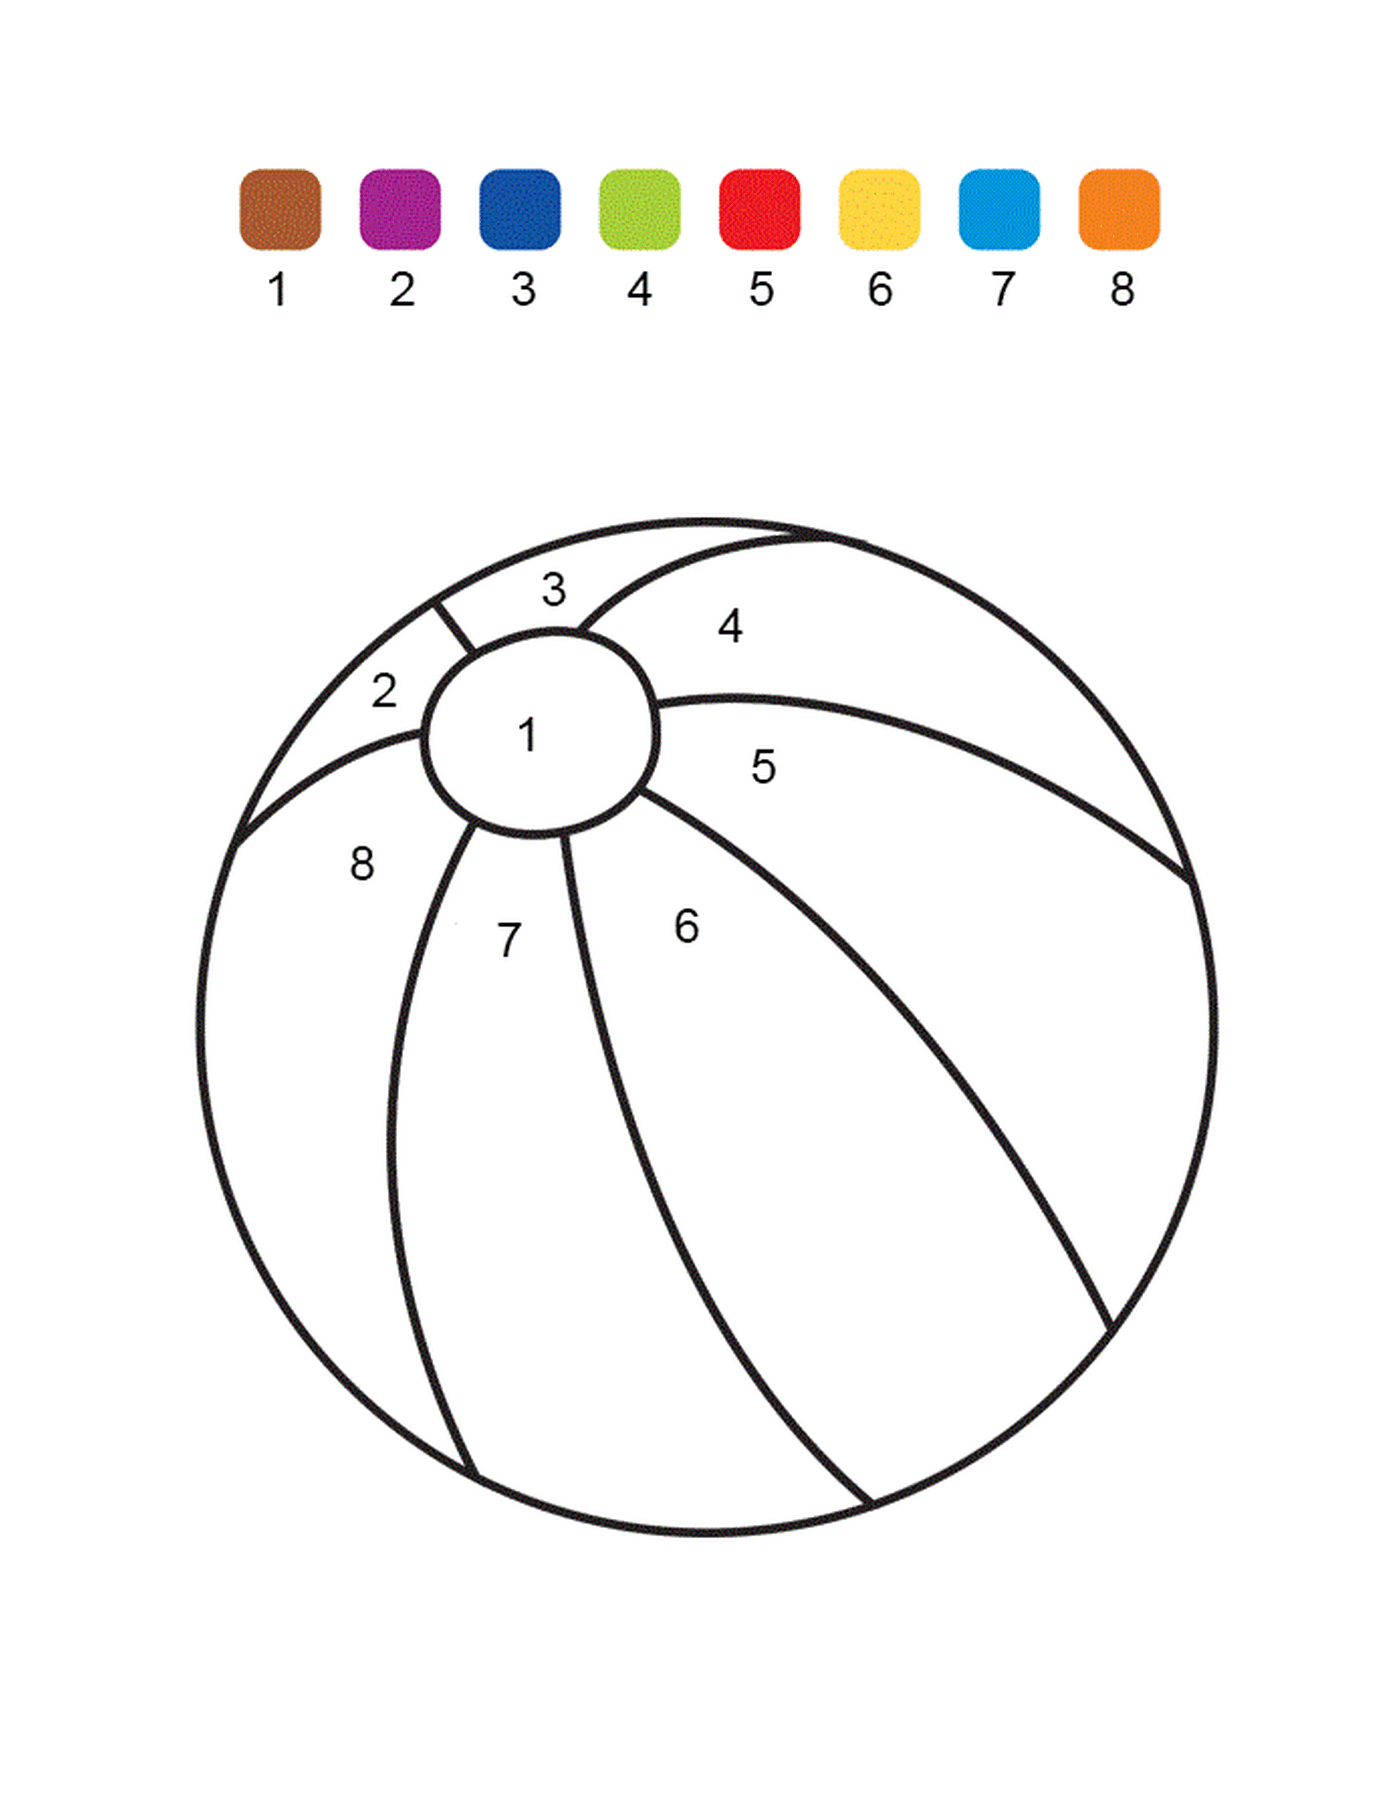  Una bola numerada de colores 